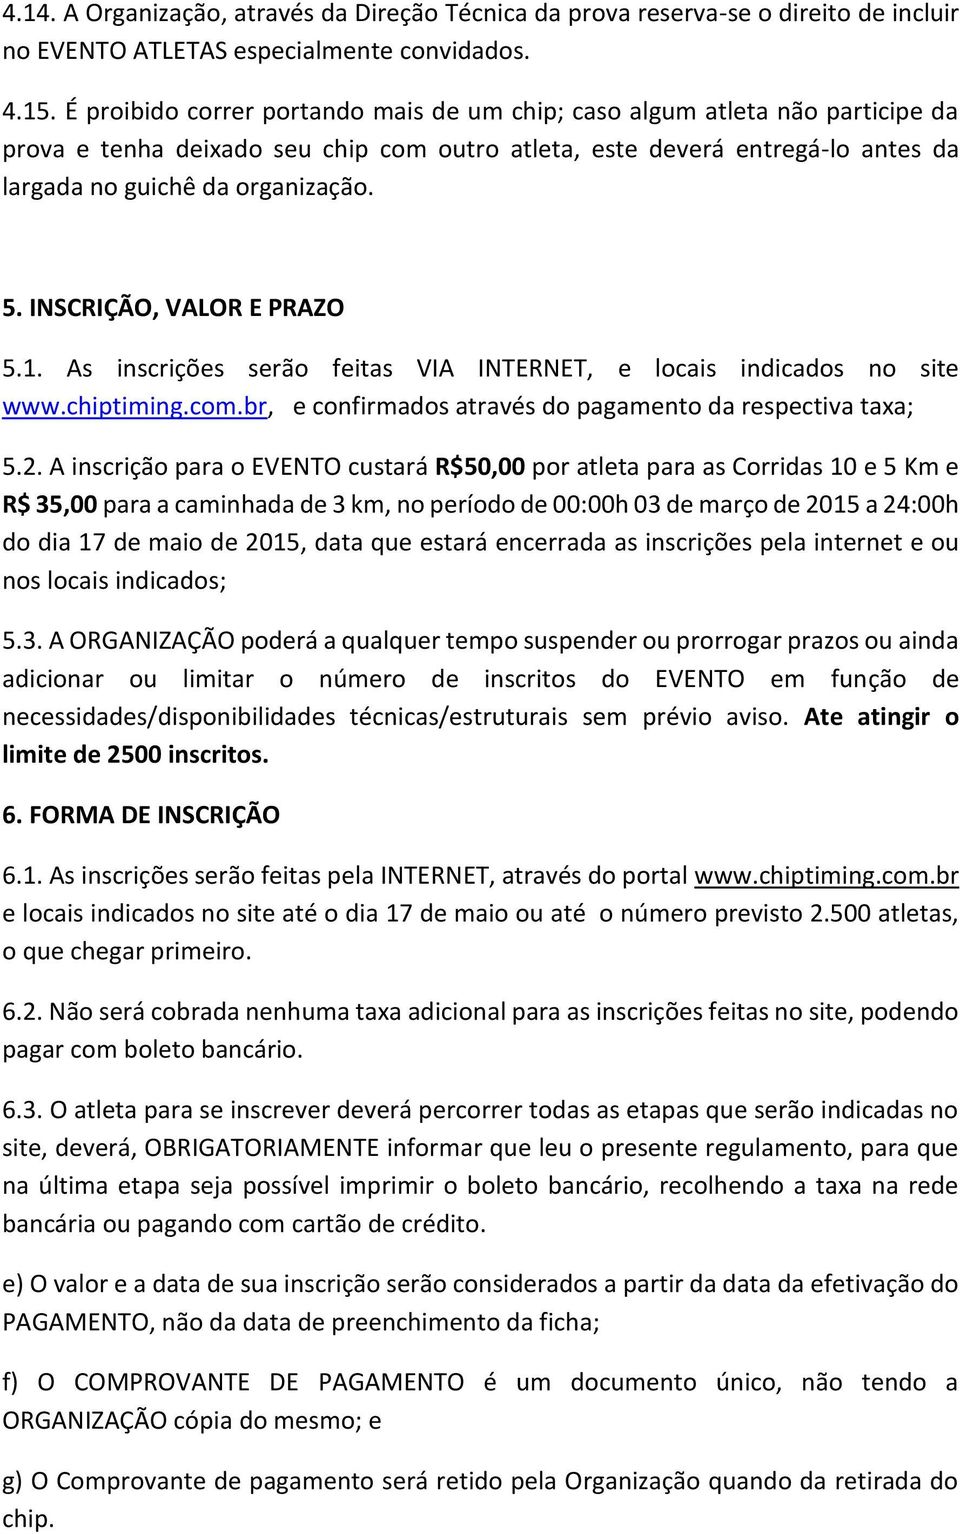 INSCRIÇÃO, VALOR E PRAZO 5.1. As inscrições serão feitas VIA INTERNET, e locais indicados no site www.chiptiming.com.br, e confirmados através do pagamento da respectiva taxa; 5.2.